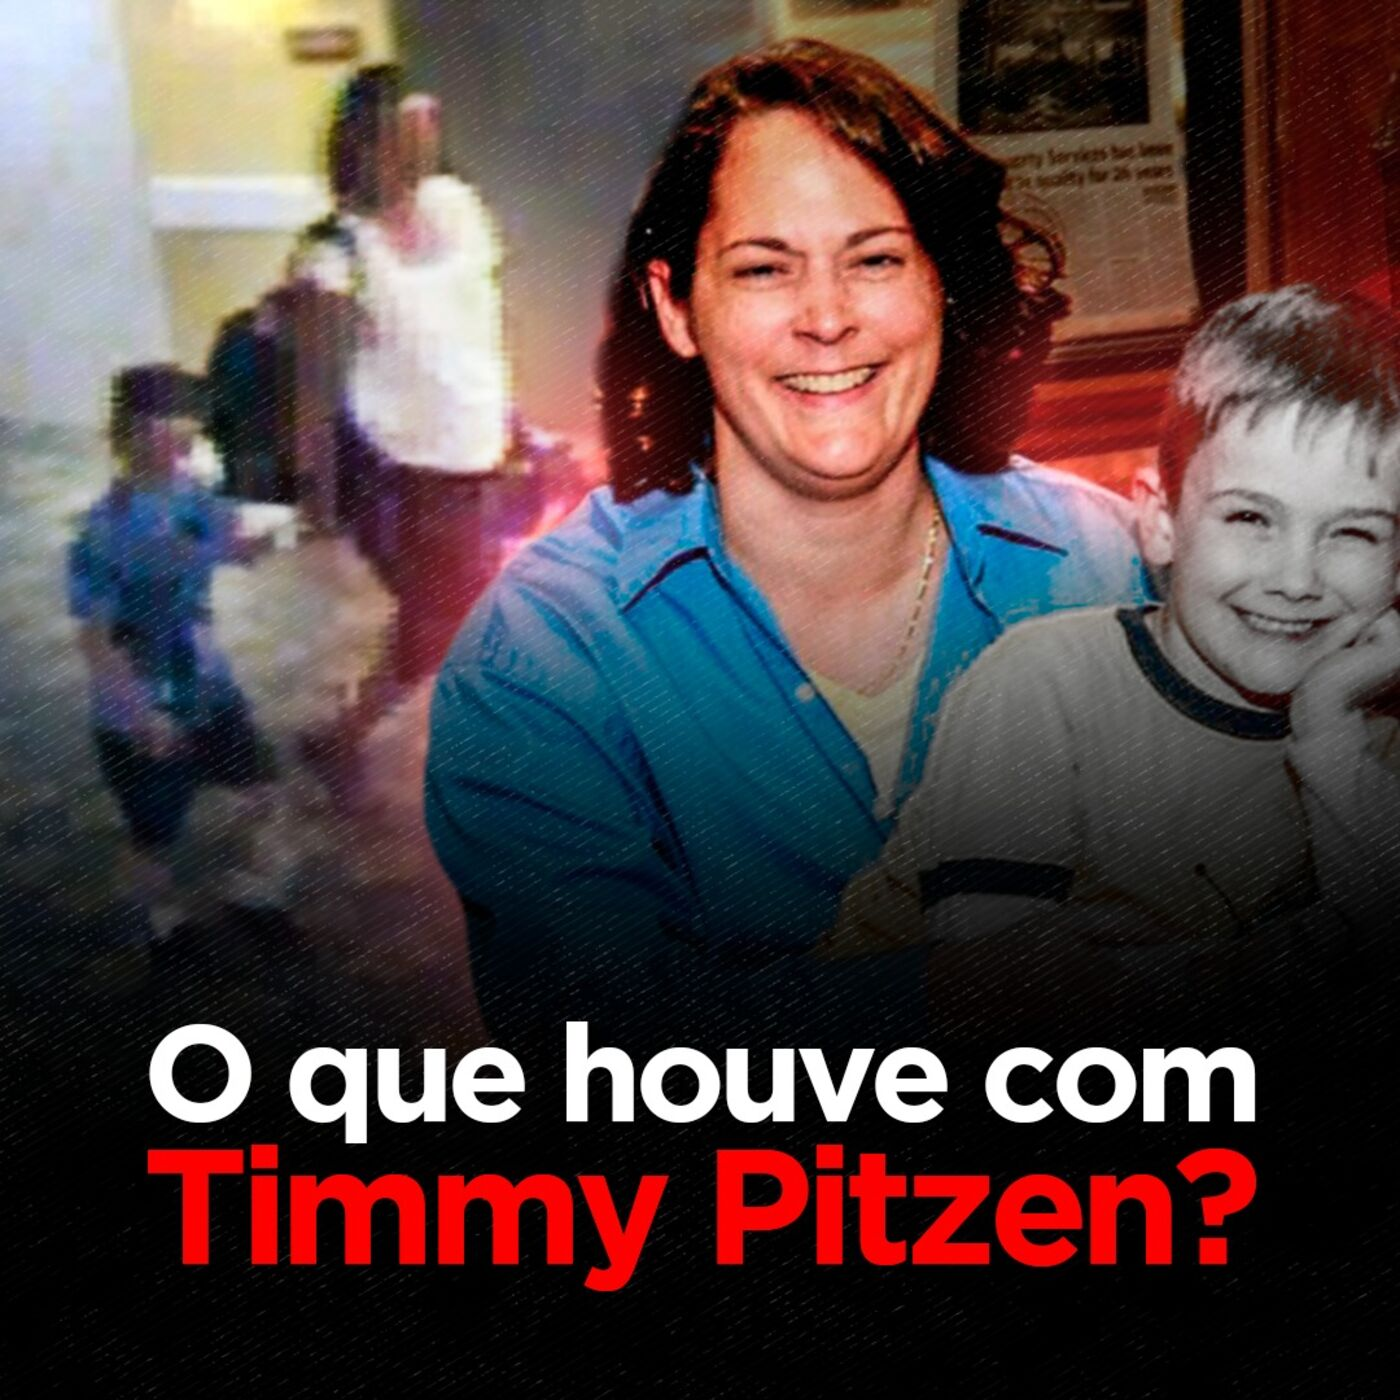 O caso da MÃE que sequestrou o PRÓPRIO FILHO | Timmothy Pitzen